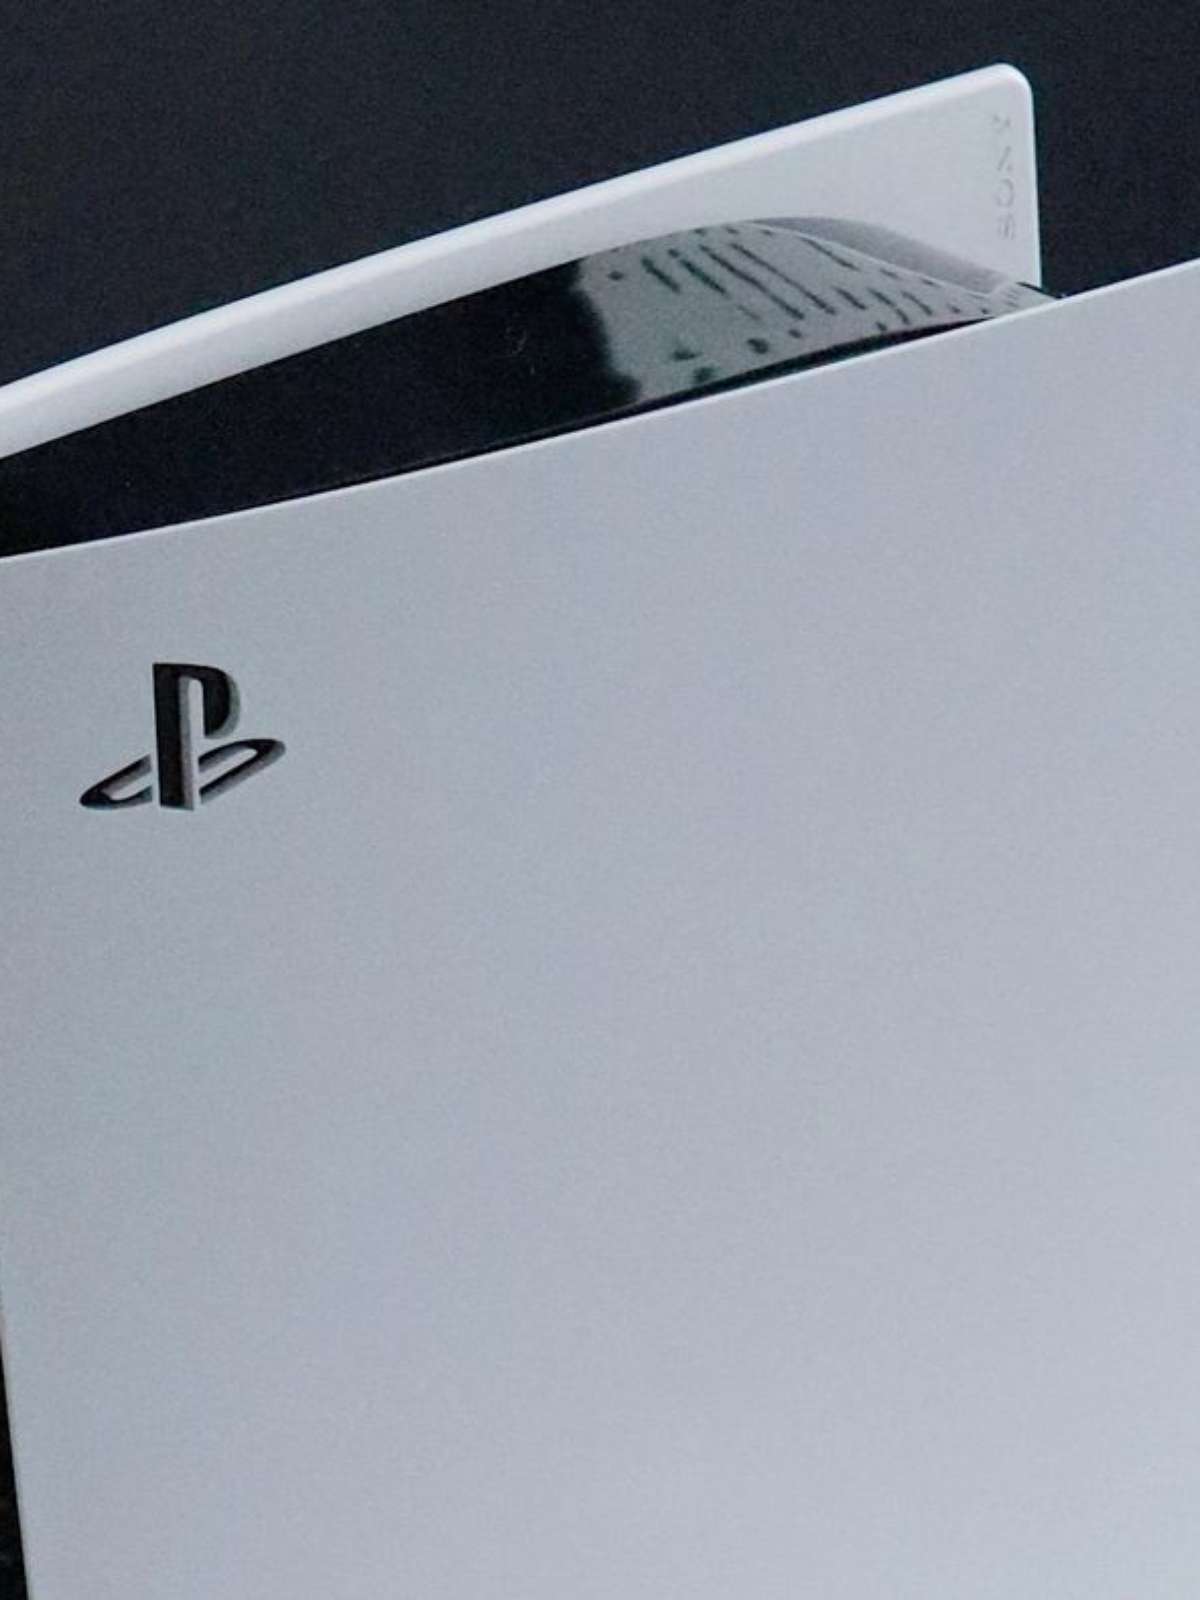 PS5 Pro pode ser lançado em 2024 com melhorias para games em 8K